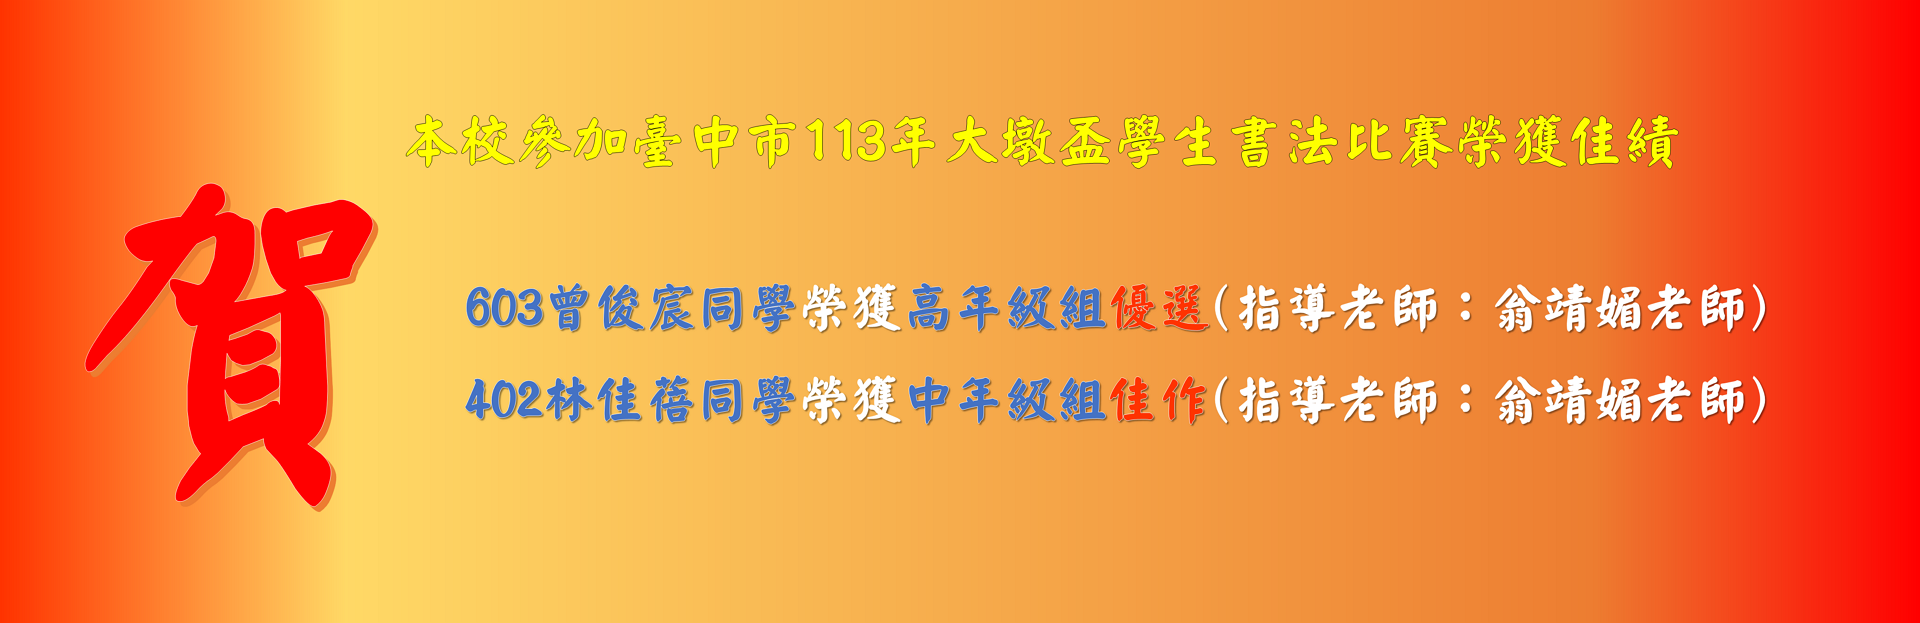 本校參加臺中市113年大墩盃學生書法比賽榮獲佳績